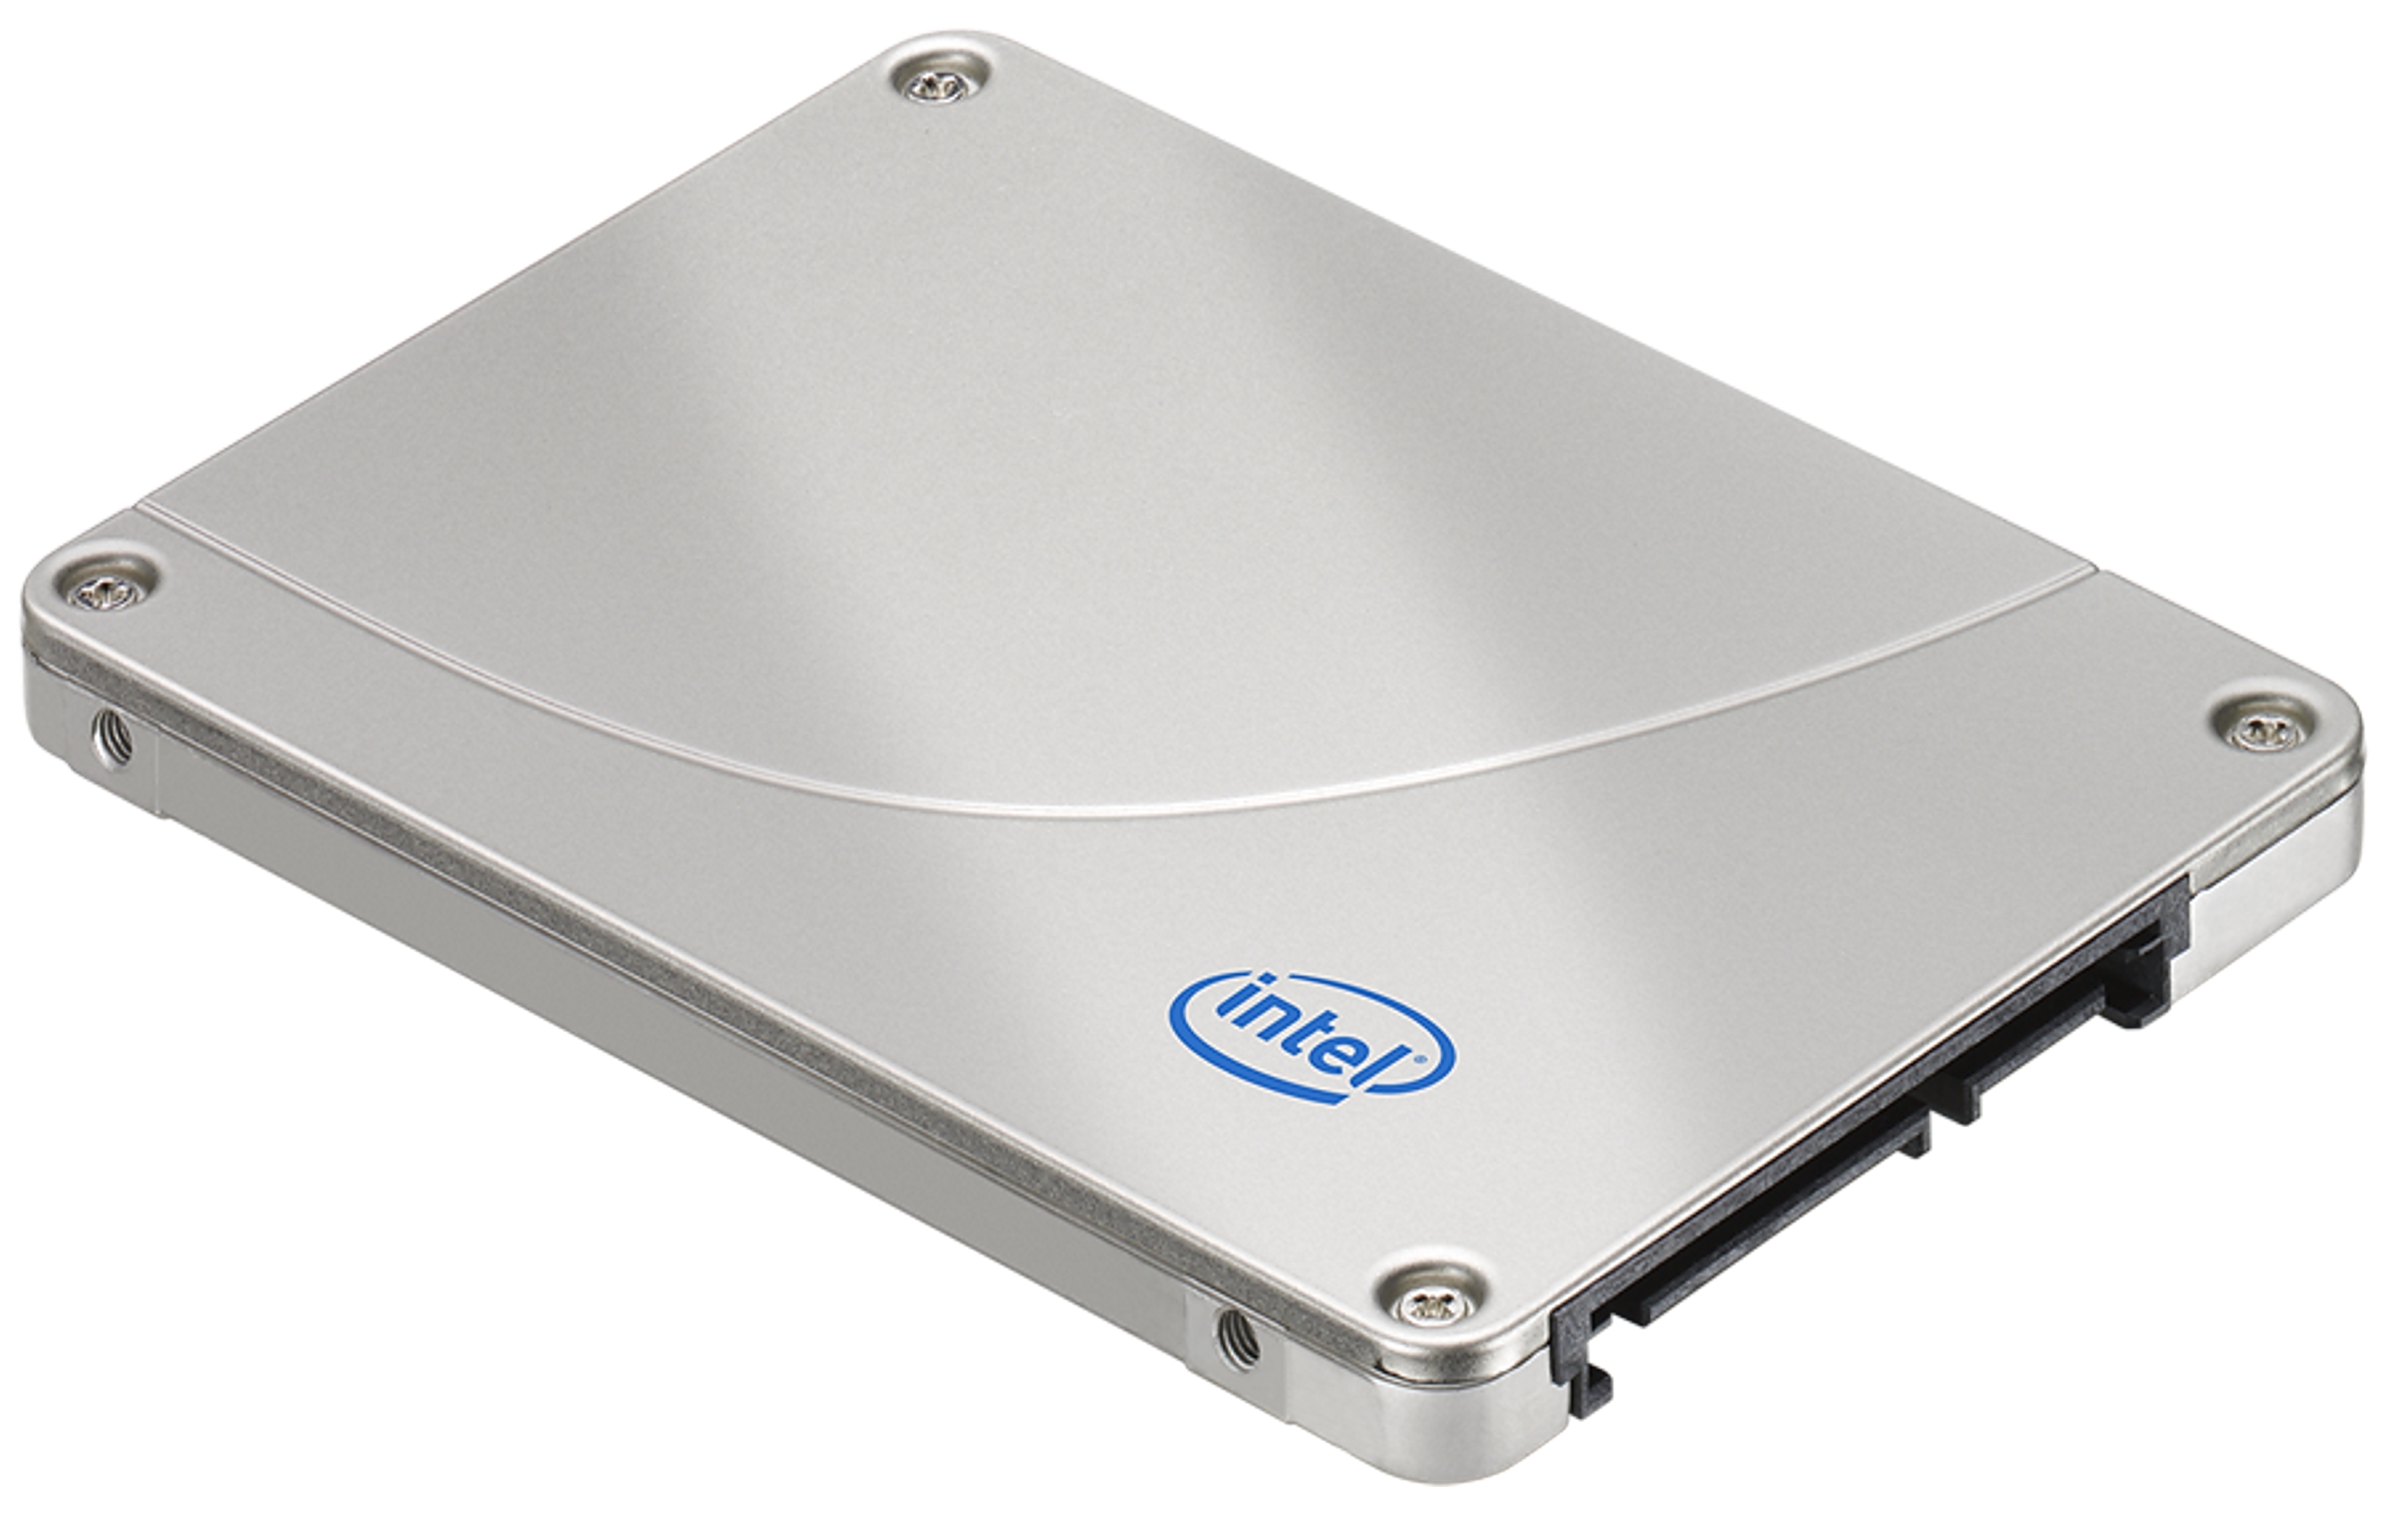 Immagine pubblicata in relazione al seguente contenuto: Intel annuncia gli SSD a 34nm di nuova generazione X25-M | Nome immagine: news11048_2.jpg